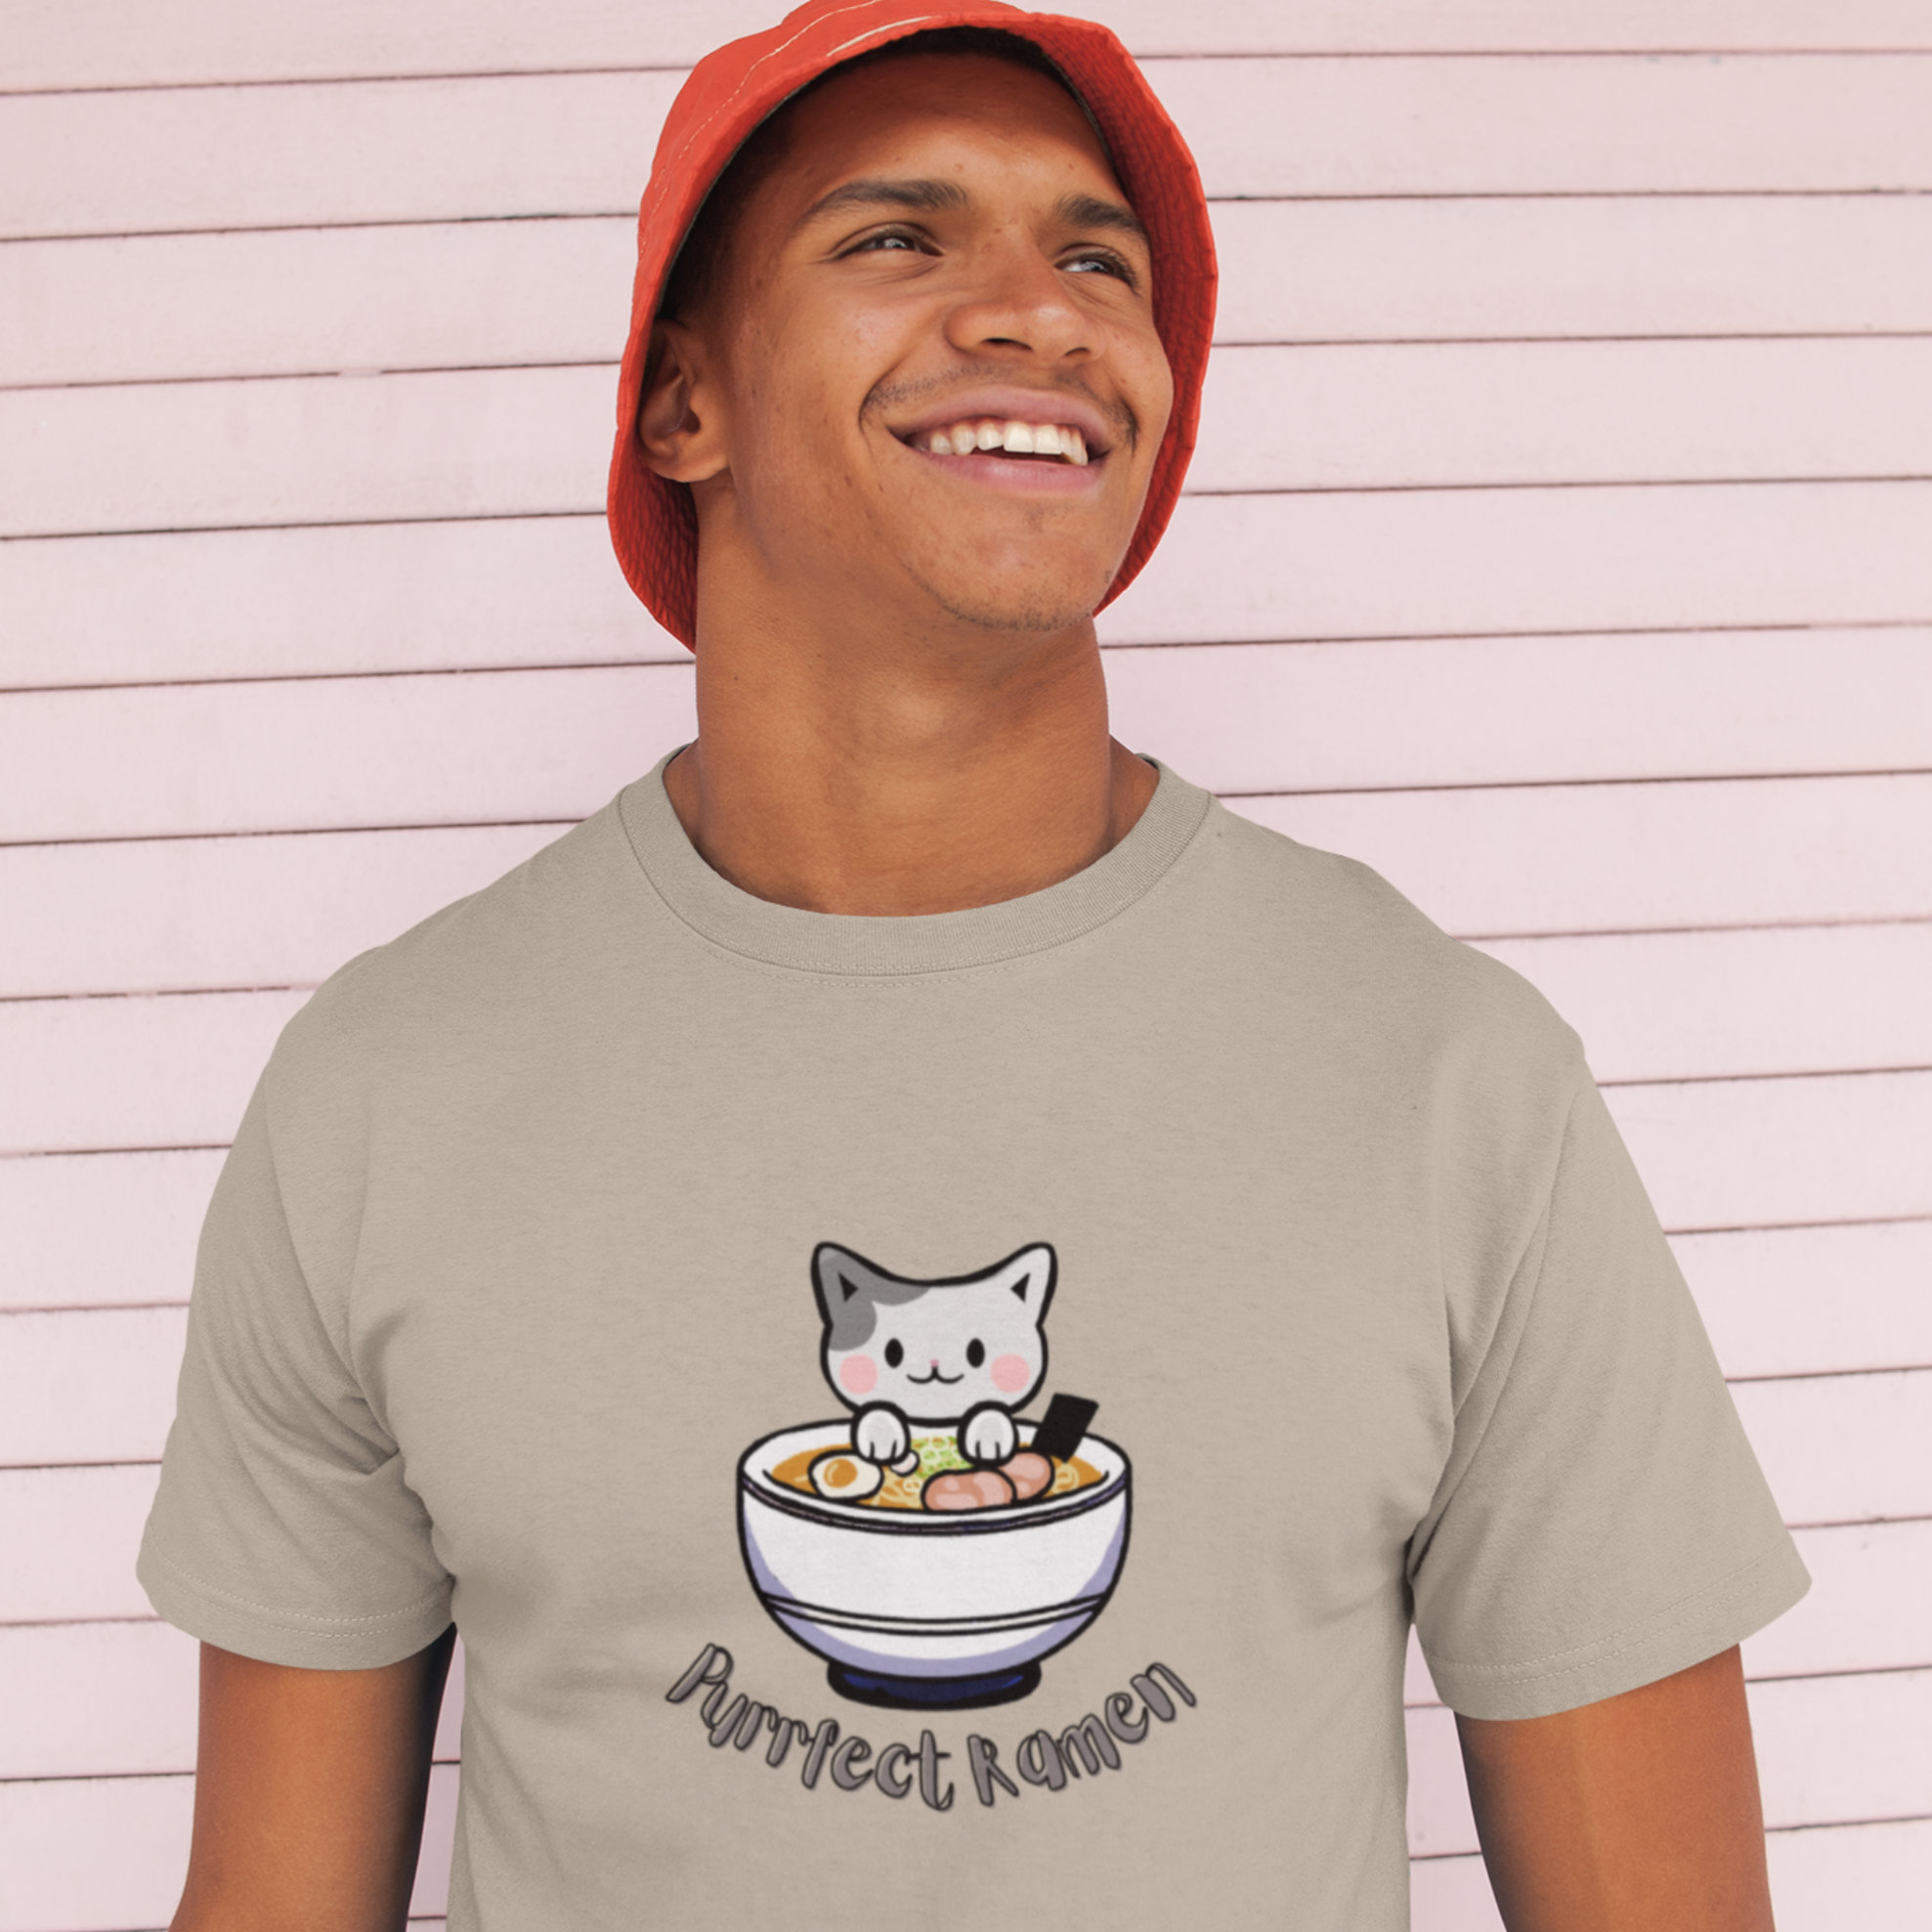 Ramen T-Shirt - Purrfect Ramen with Cute Cat Illustration - Japanese Foodie Shirt with Ramen Art